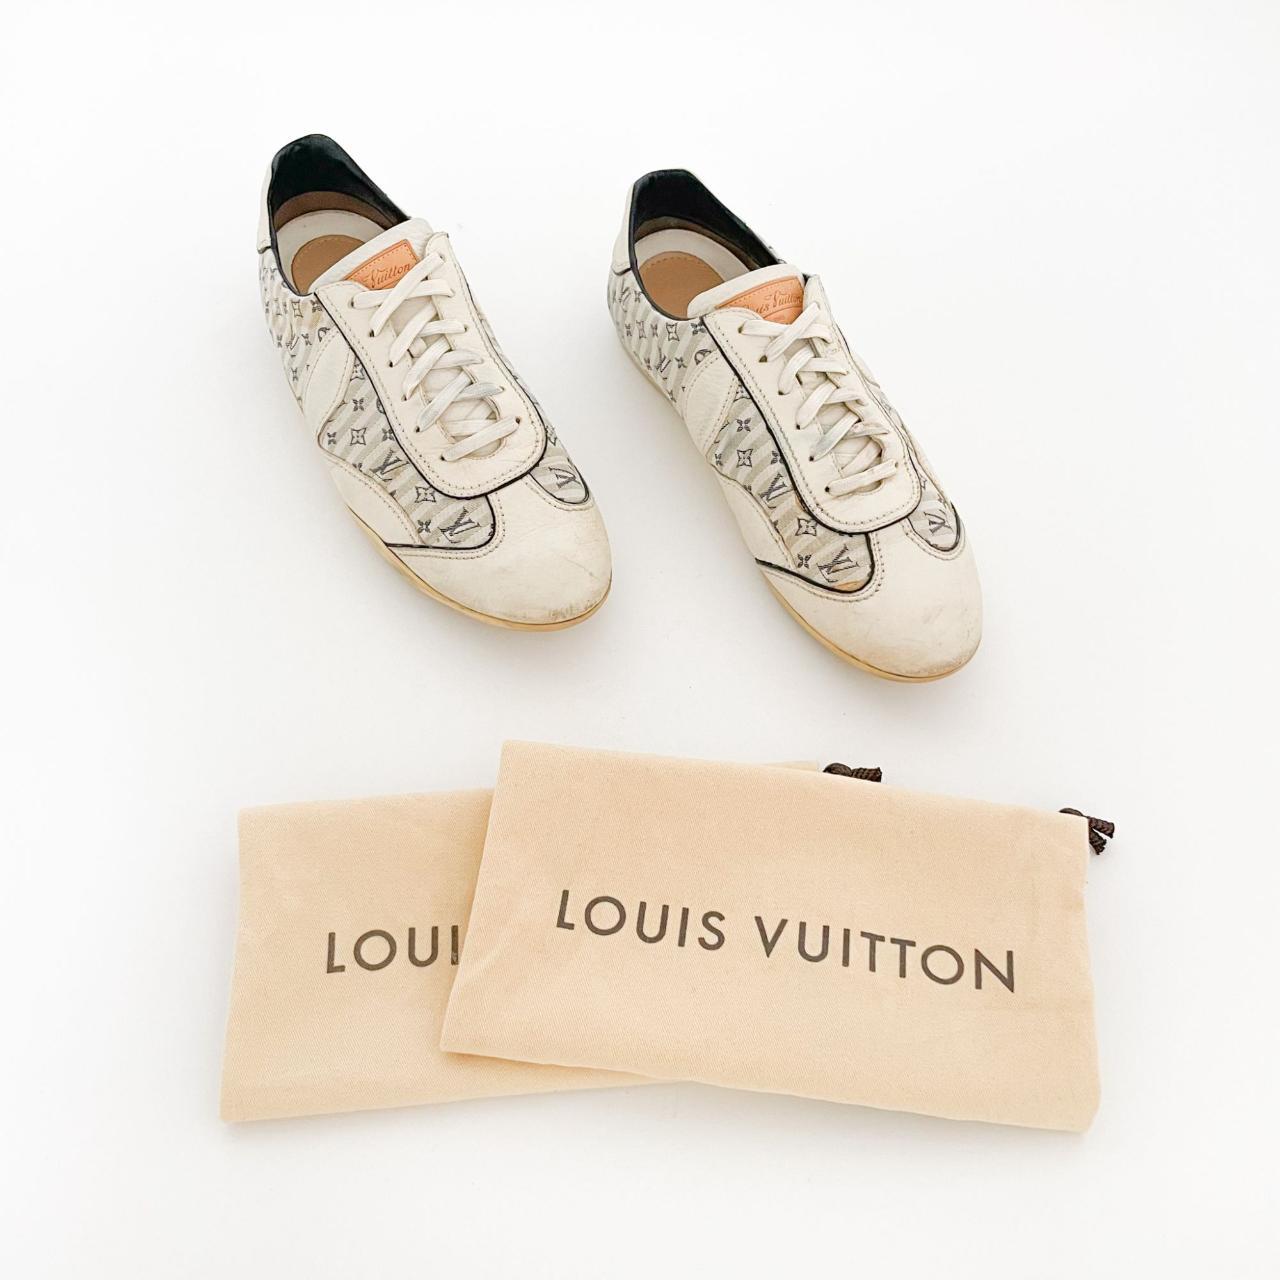 LOUIS VUITTON WHITE LOGO SHOES Iconic Louis Vuitton - Depop